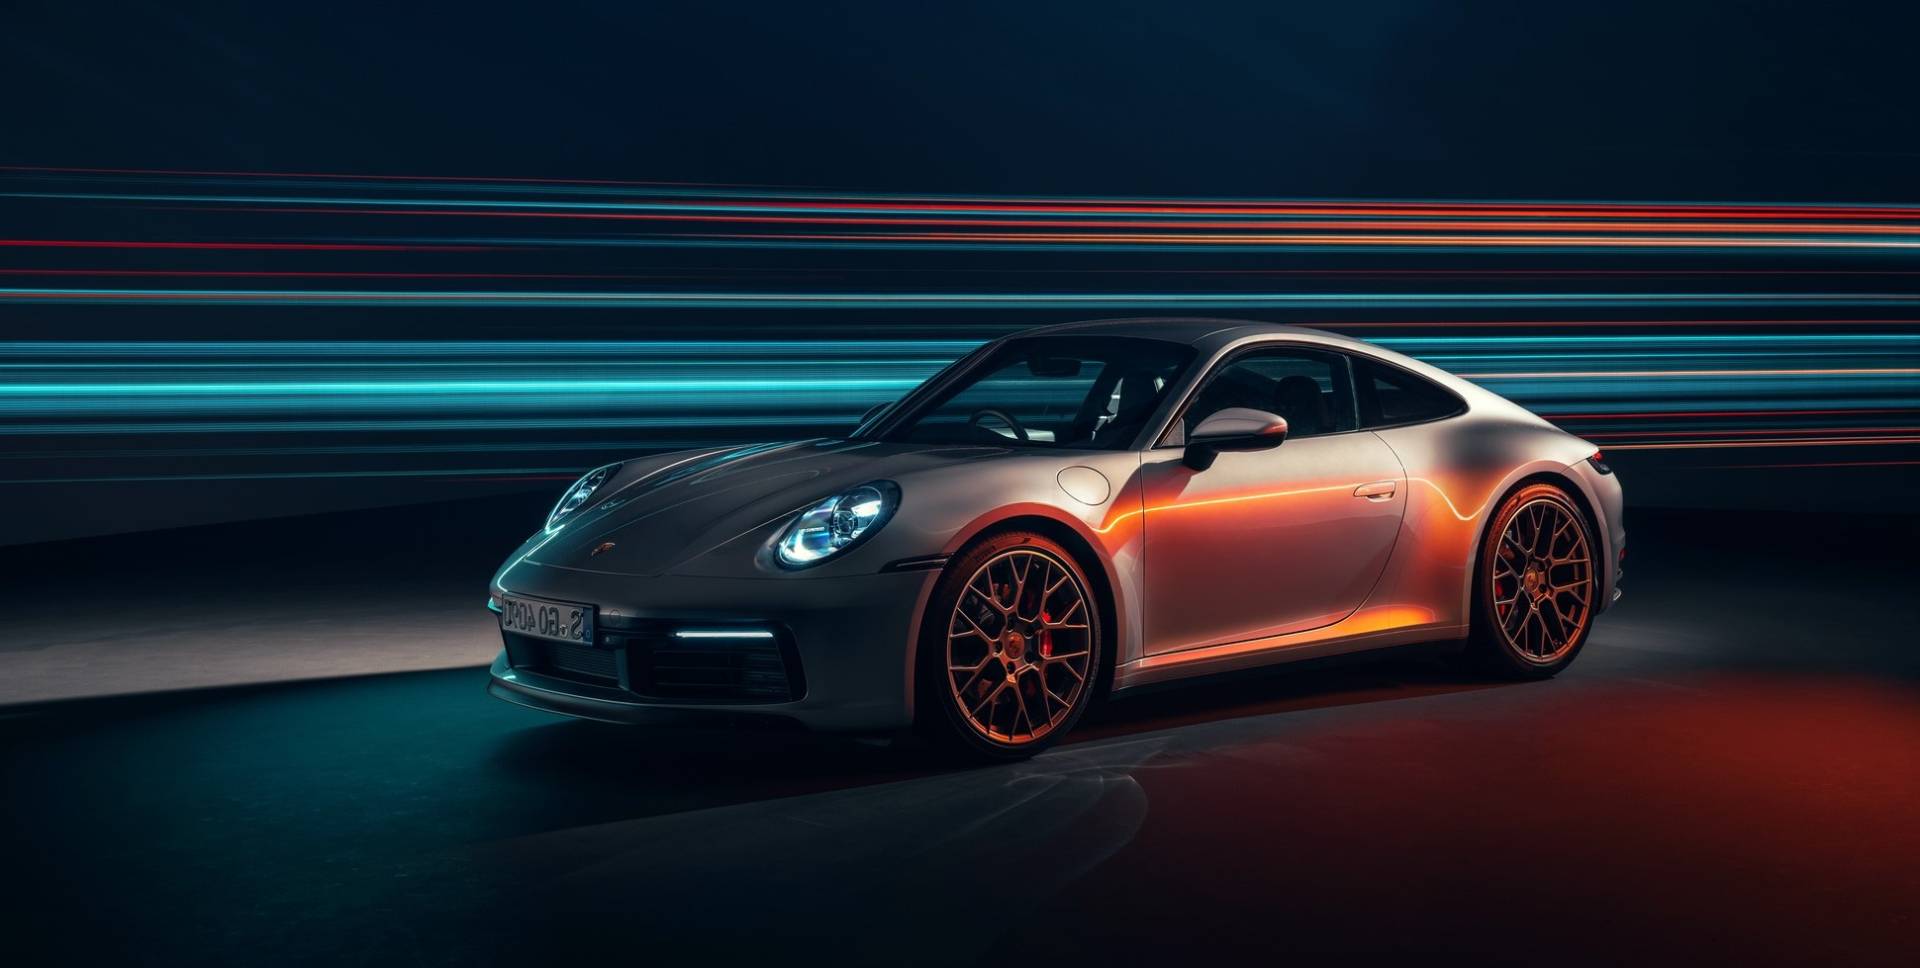 Porsche показал первый гибридный спорткар 911